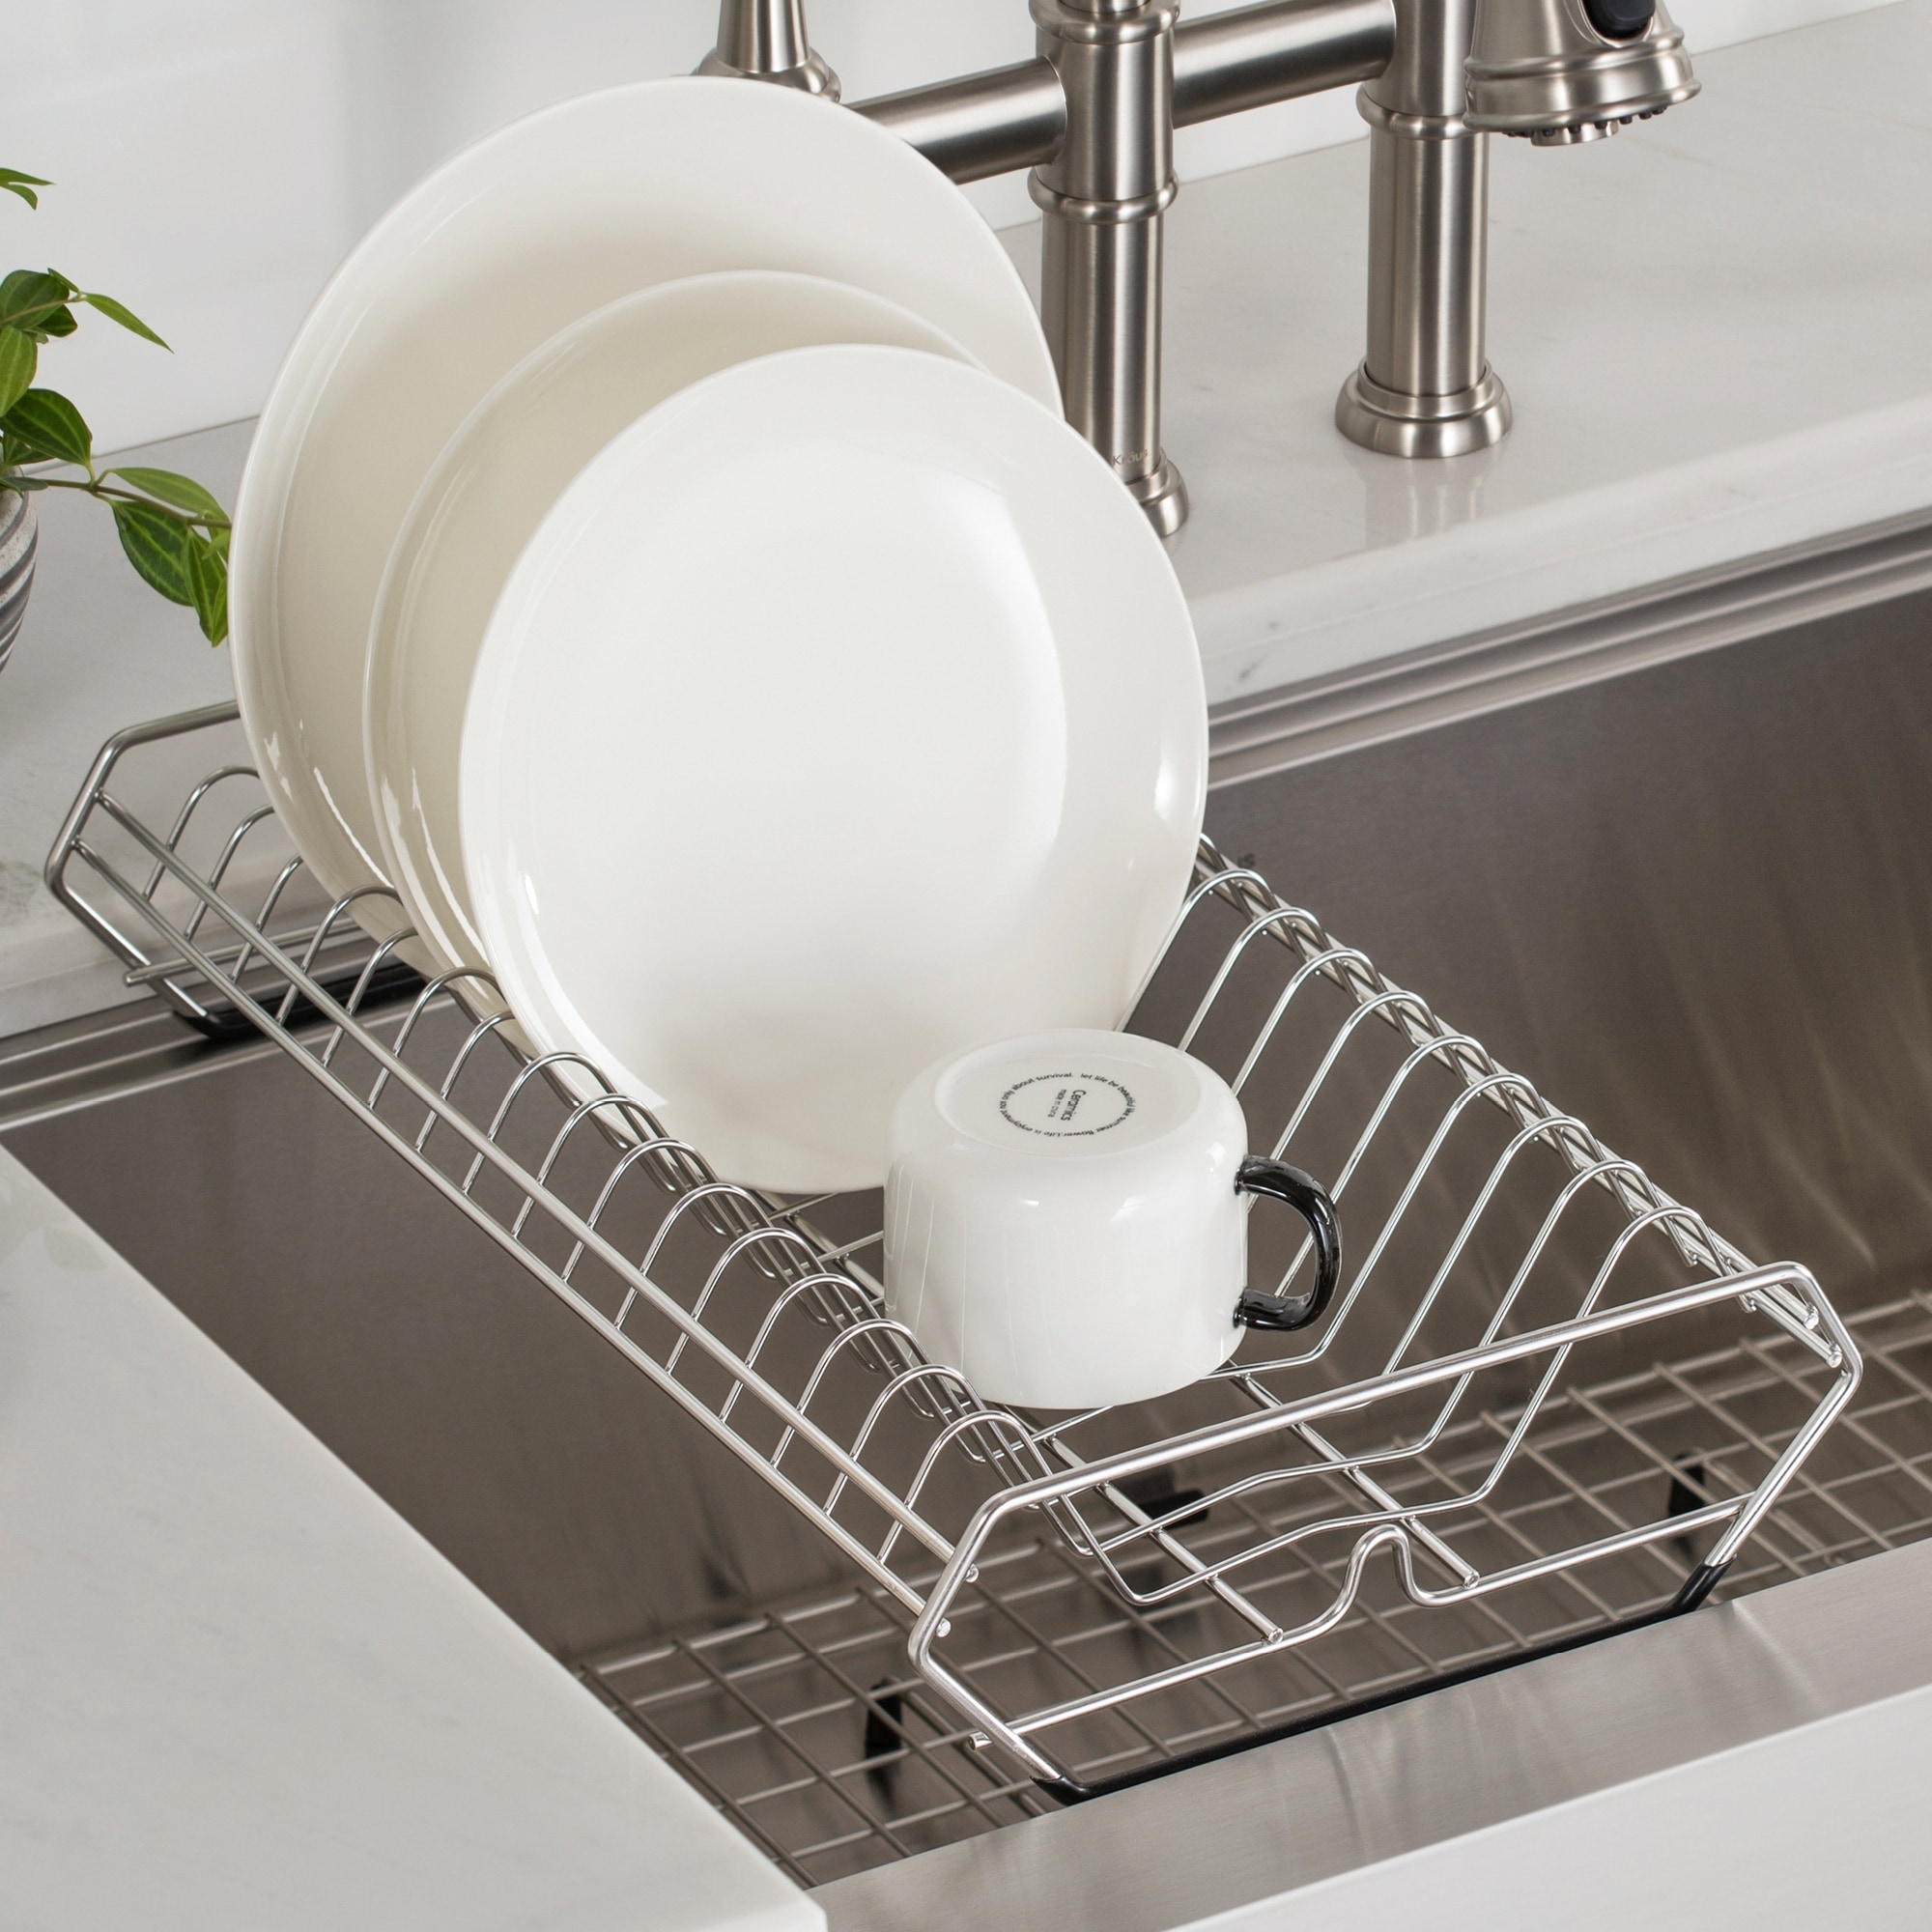 KRAUS Workstation Kitchen Sink Dish Drying Rack Drainer Utensil Holder -  Bed Bath & Beyond - 33492386